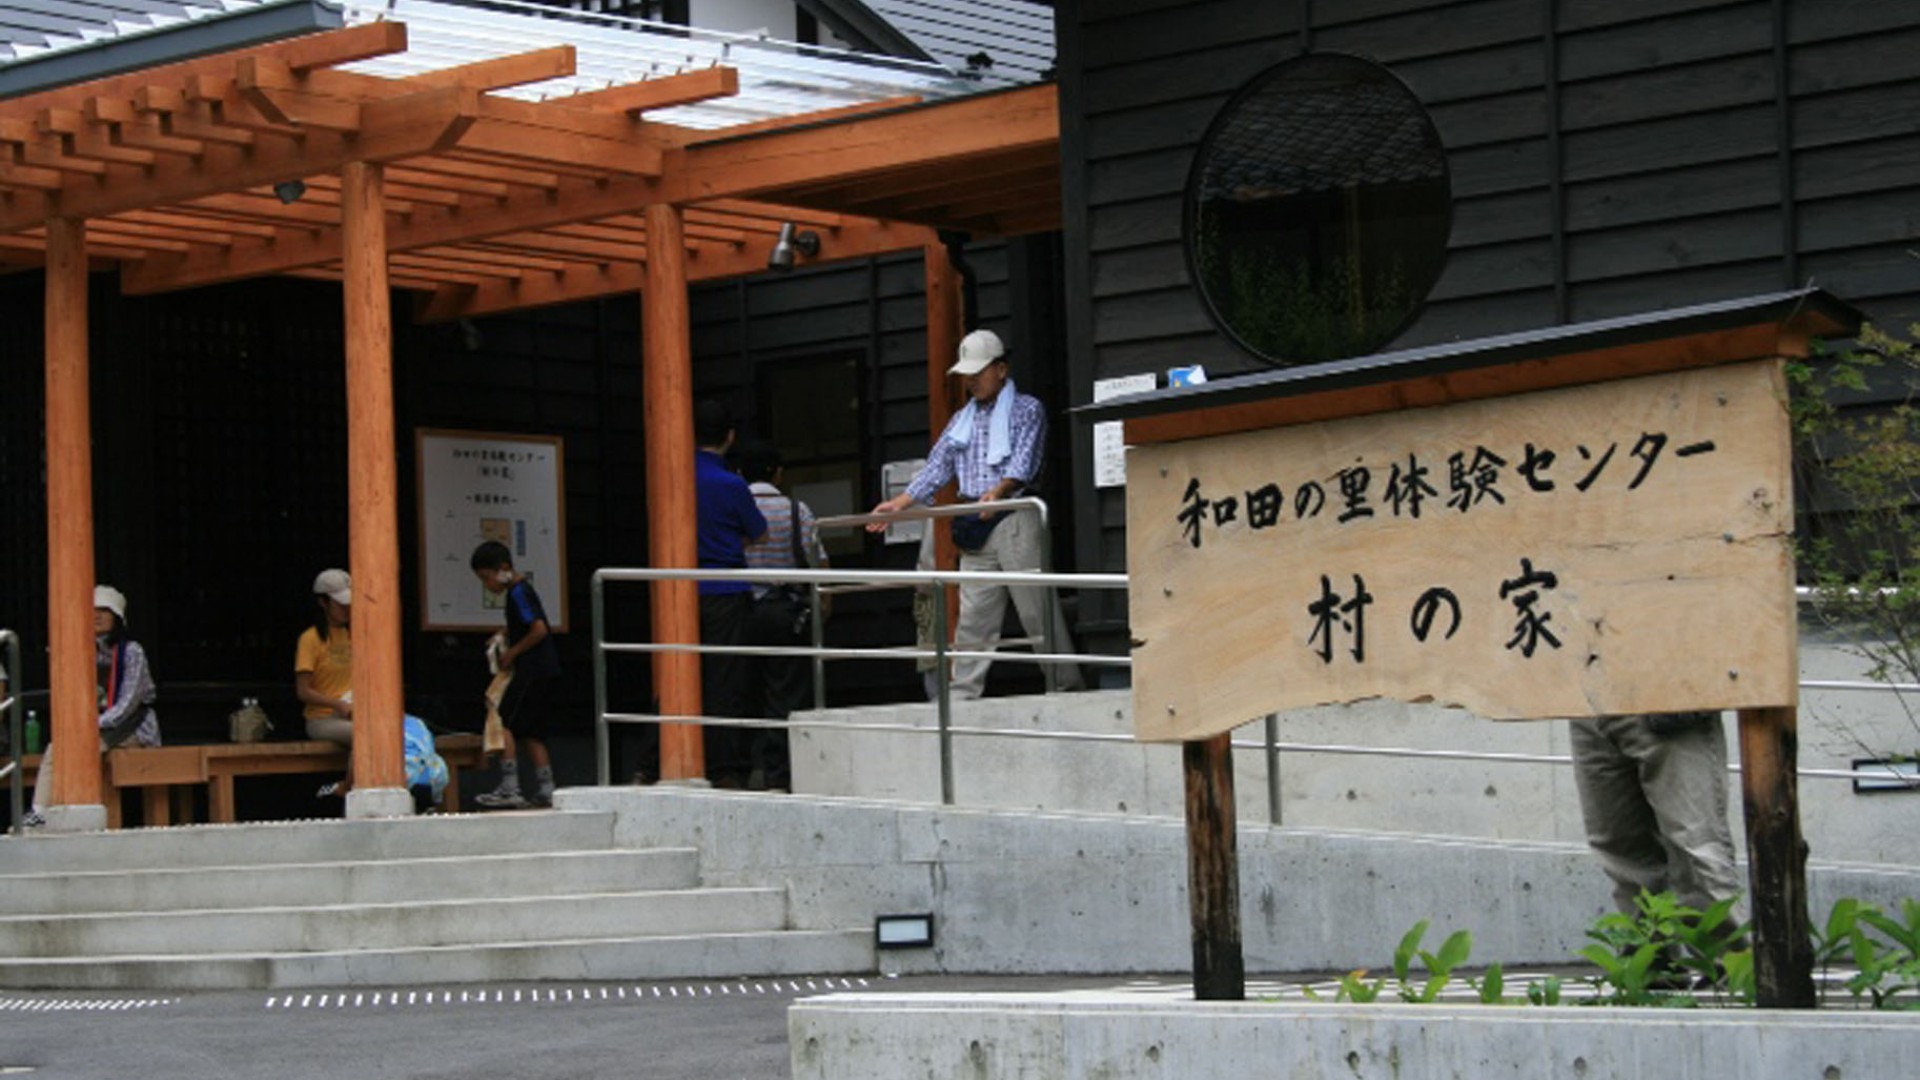 和田の里体験センター「村の家」